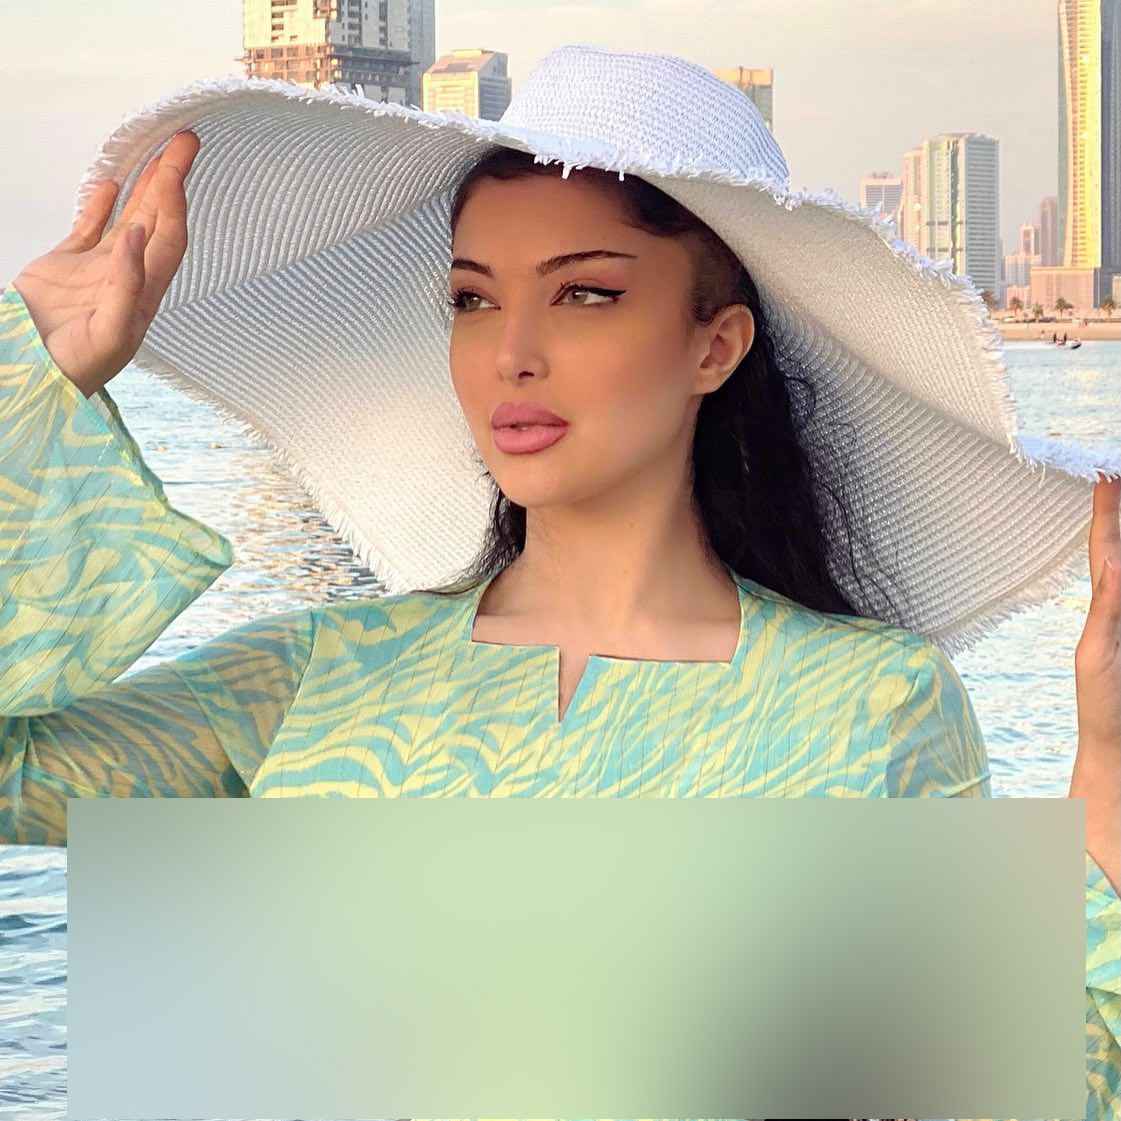 کولاک همسر زیبای سپهر حیدری با ۲ عکس منشوری کنار دریا! + تصاویر